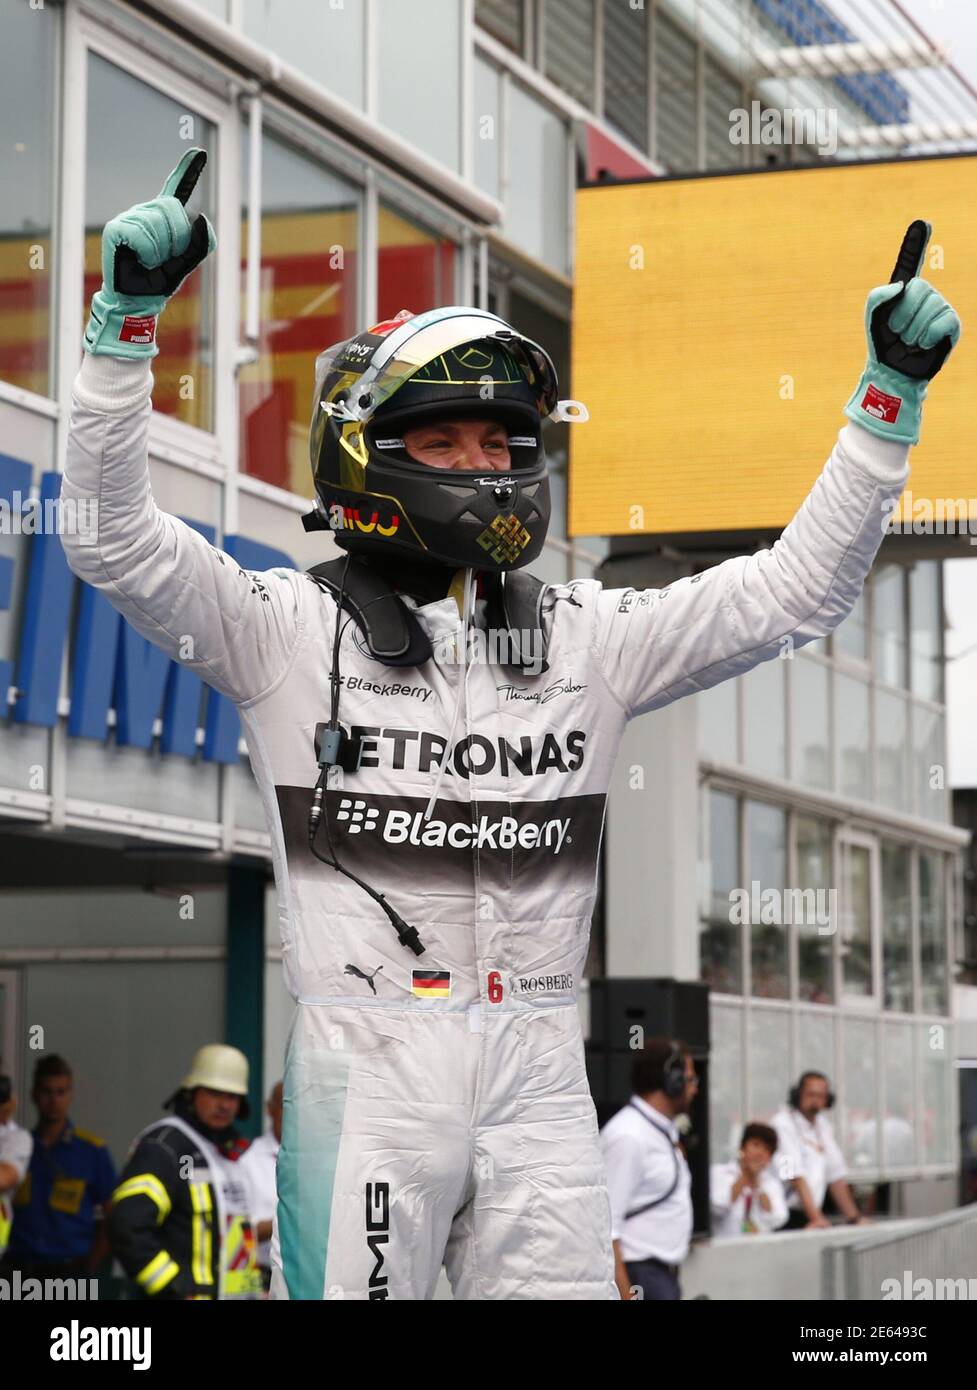 El piloto de Fórmula uno de Mercedes Nico Rosberg de Alemania celebra ganar  el Gran Premio de F1 de Alemania en el circuito de carreras de Hockenheim  el 20 de julio de